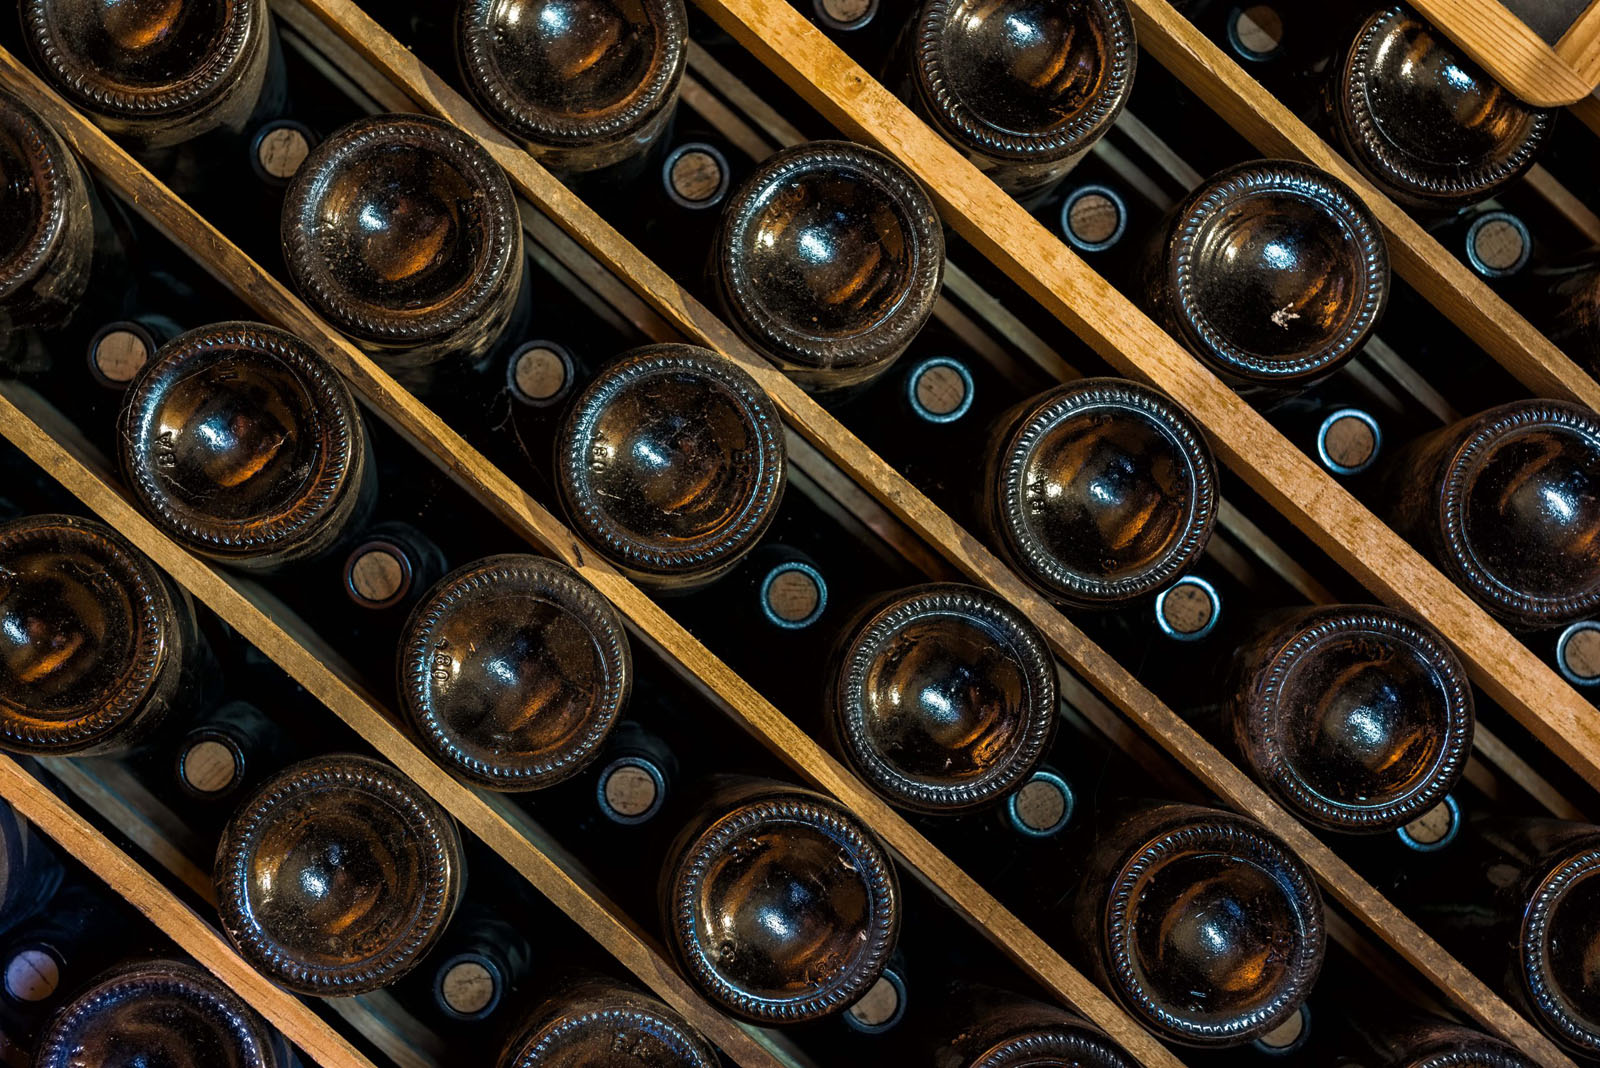 Wine bottles aging in a wine cellar